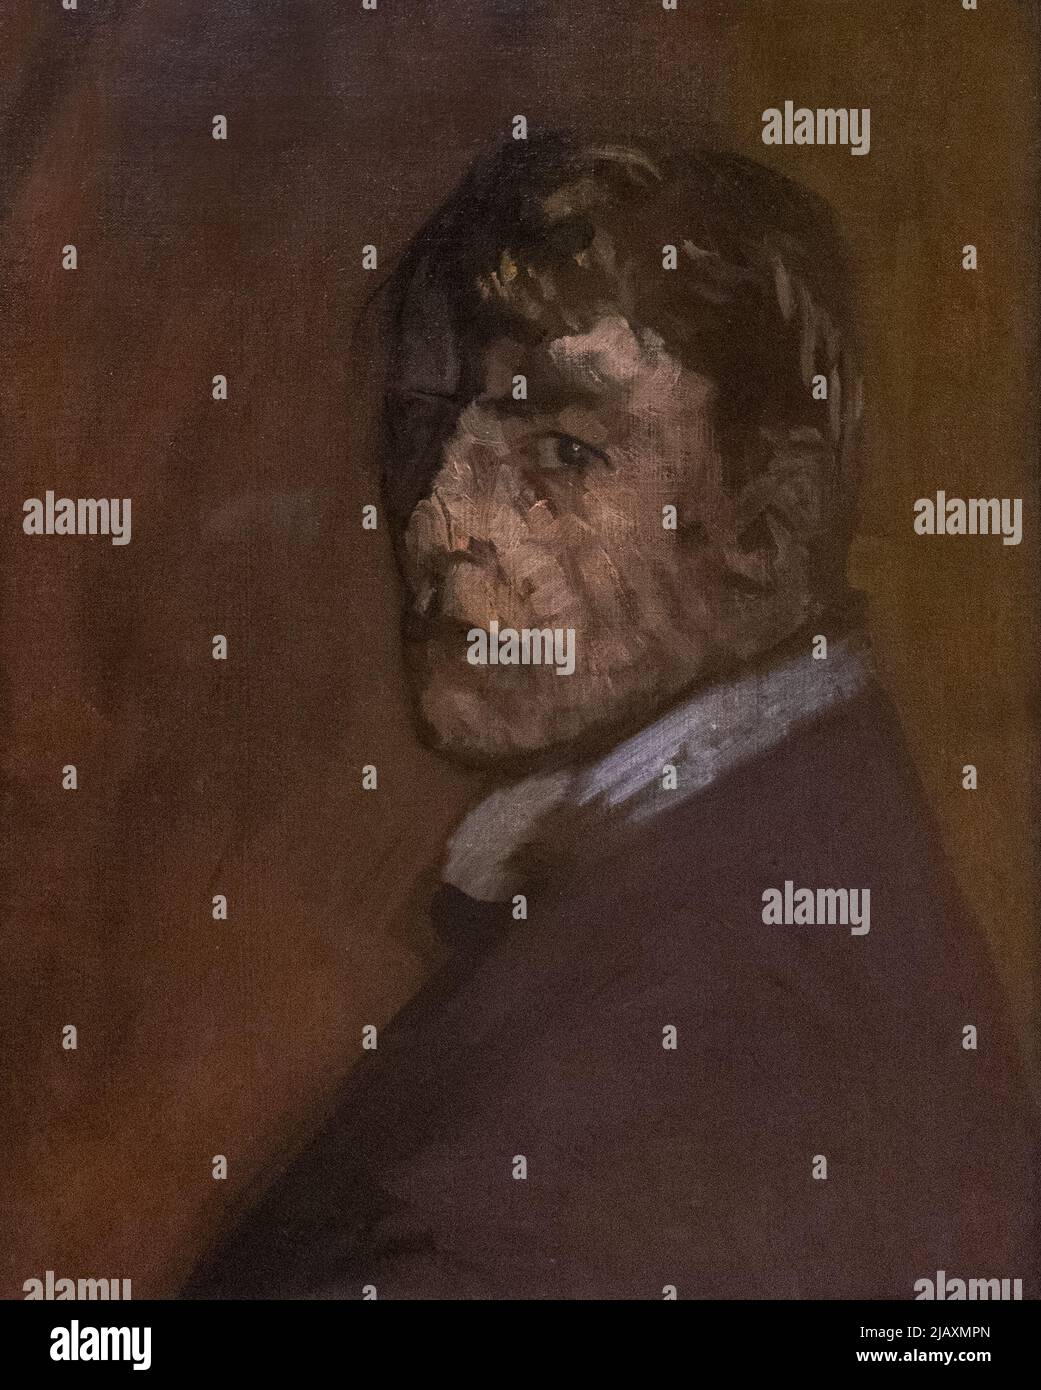 Walter Sickert Gemälde - 19. Jahrhundert Kunst, Selbstporträt c 1896, Öl auf Leinwand. Britische Malerei nach dem Impressionismus. Stockfoto